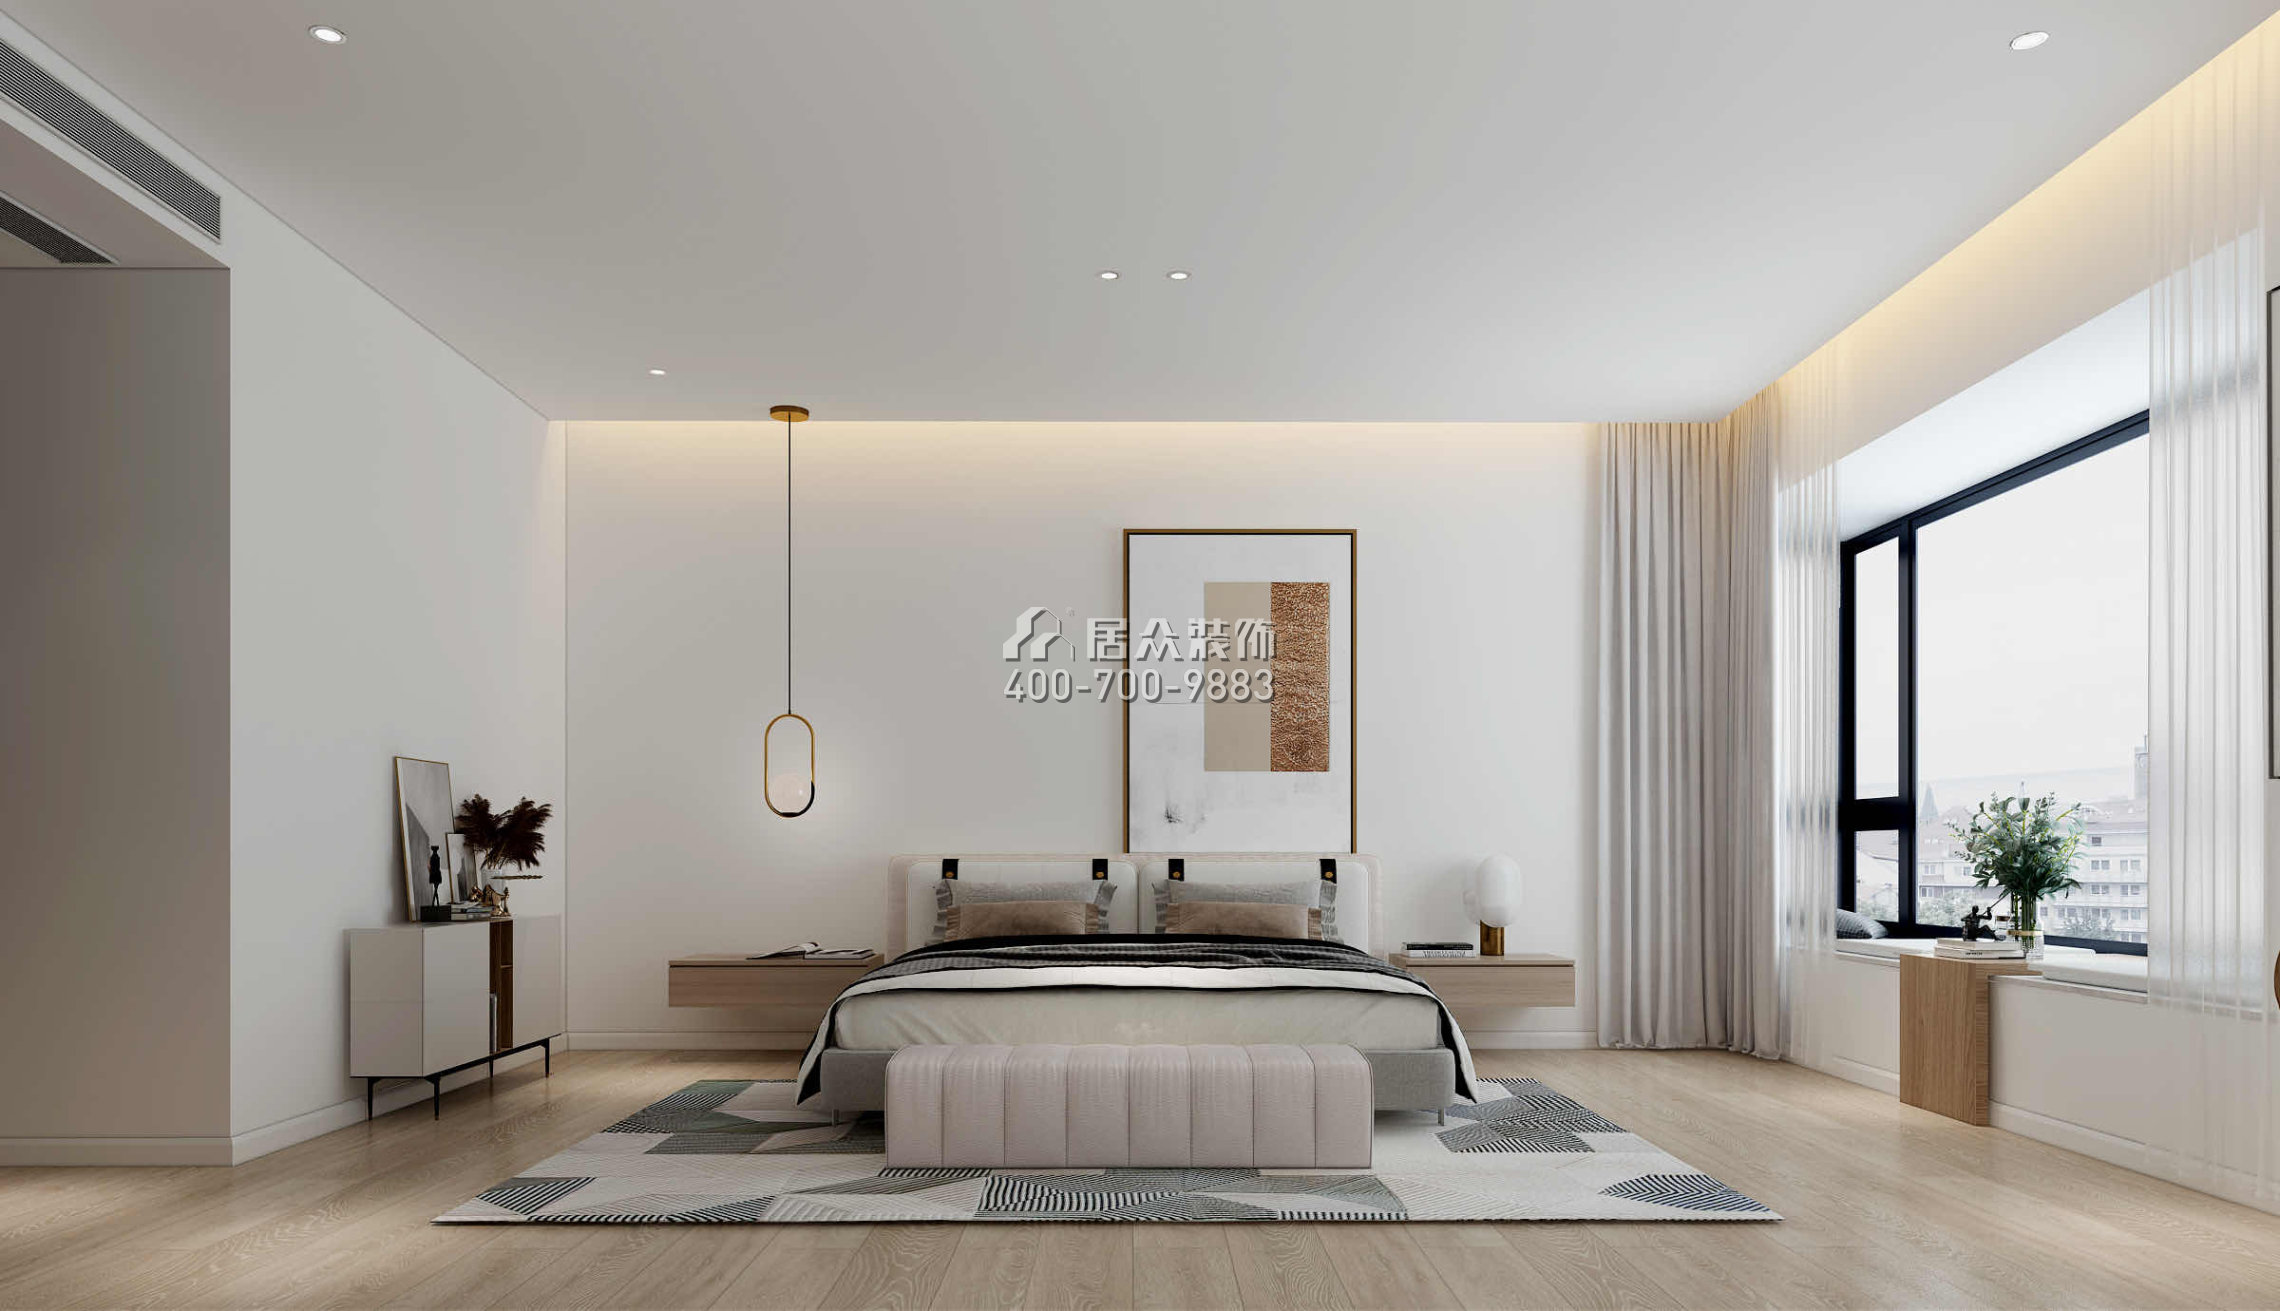 錦繡山河268平方米現代簡約風格平層戶型臥室裝修效果圖